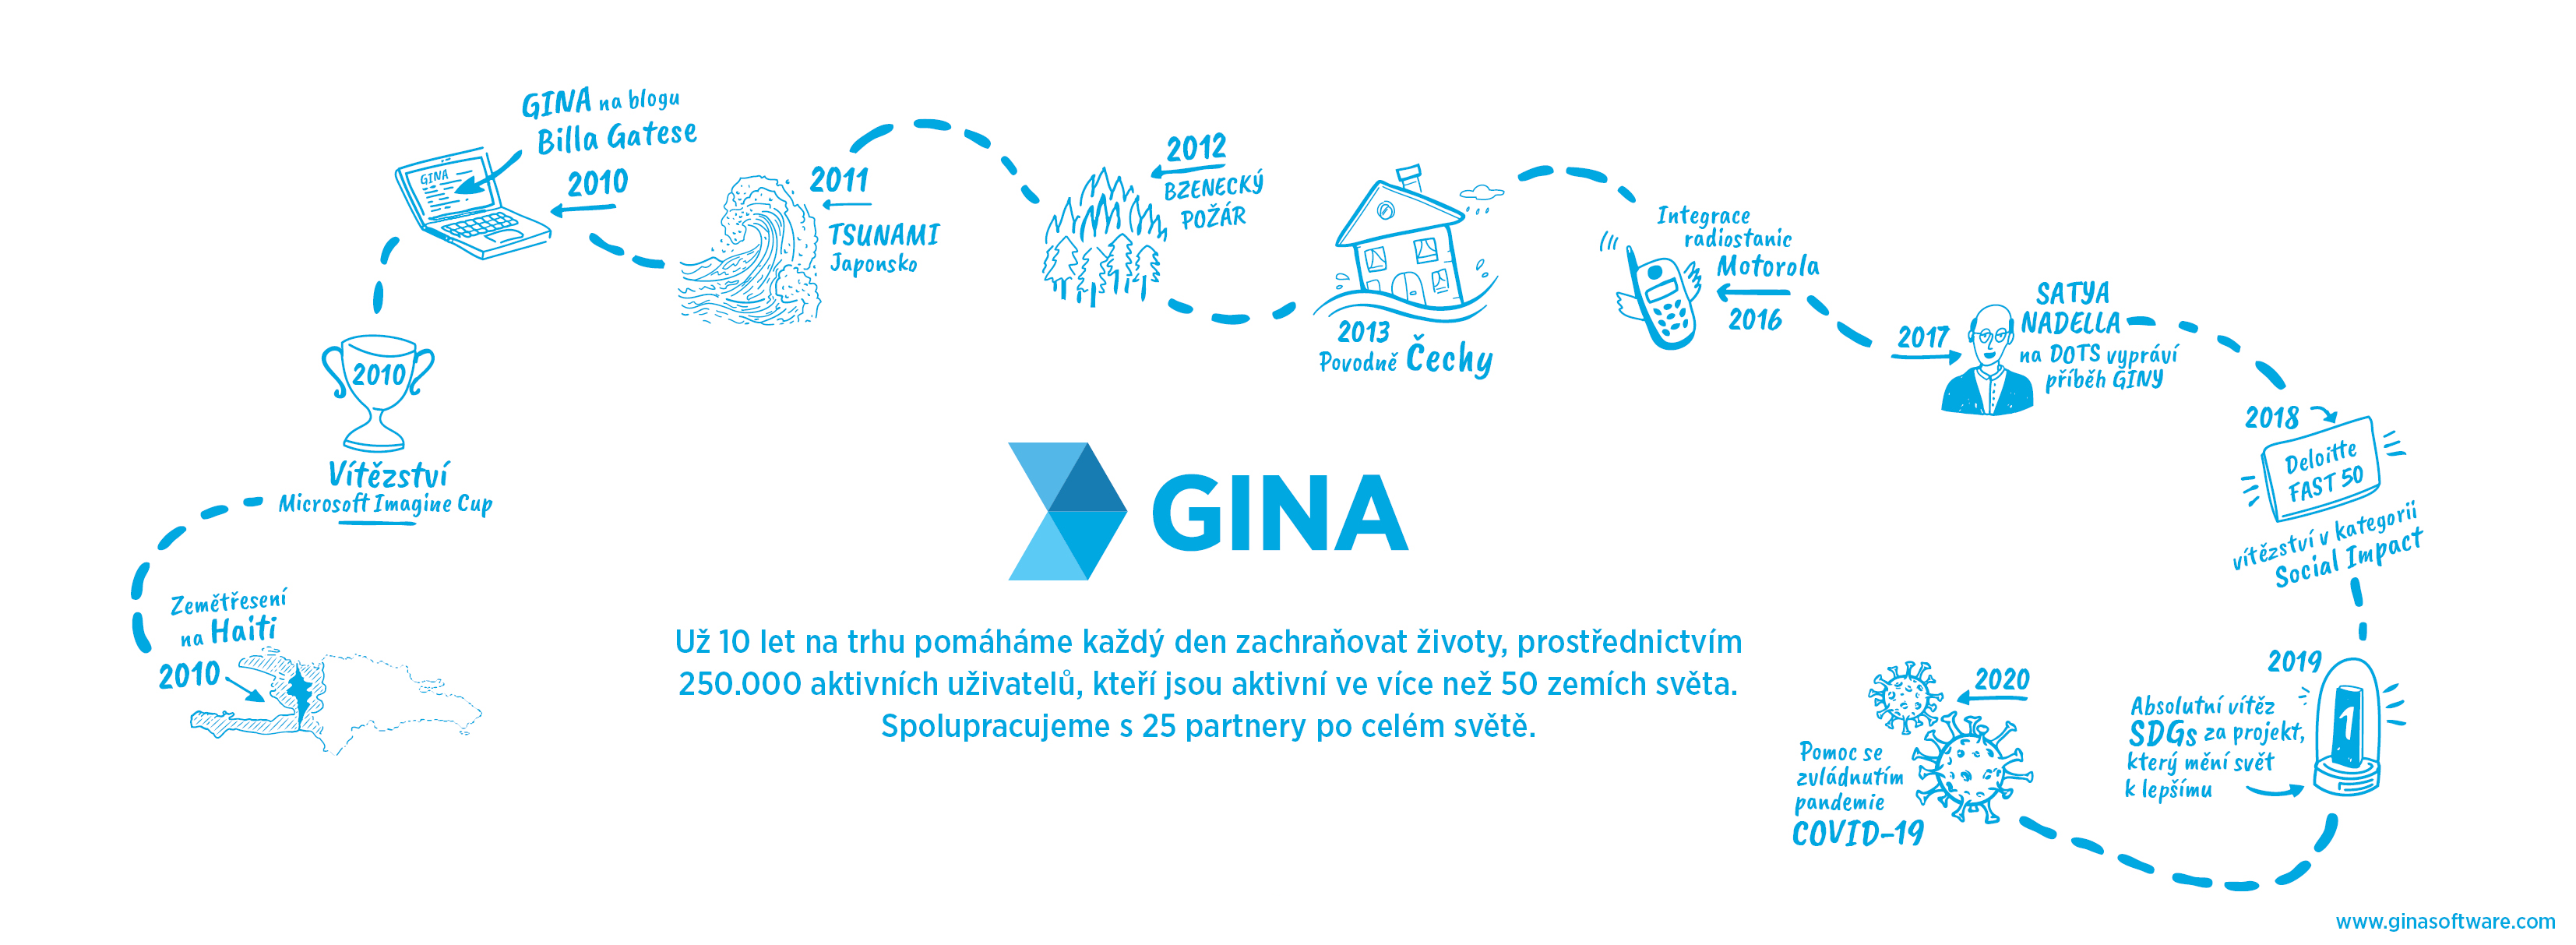 Infografika GINA slaví 10 let